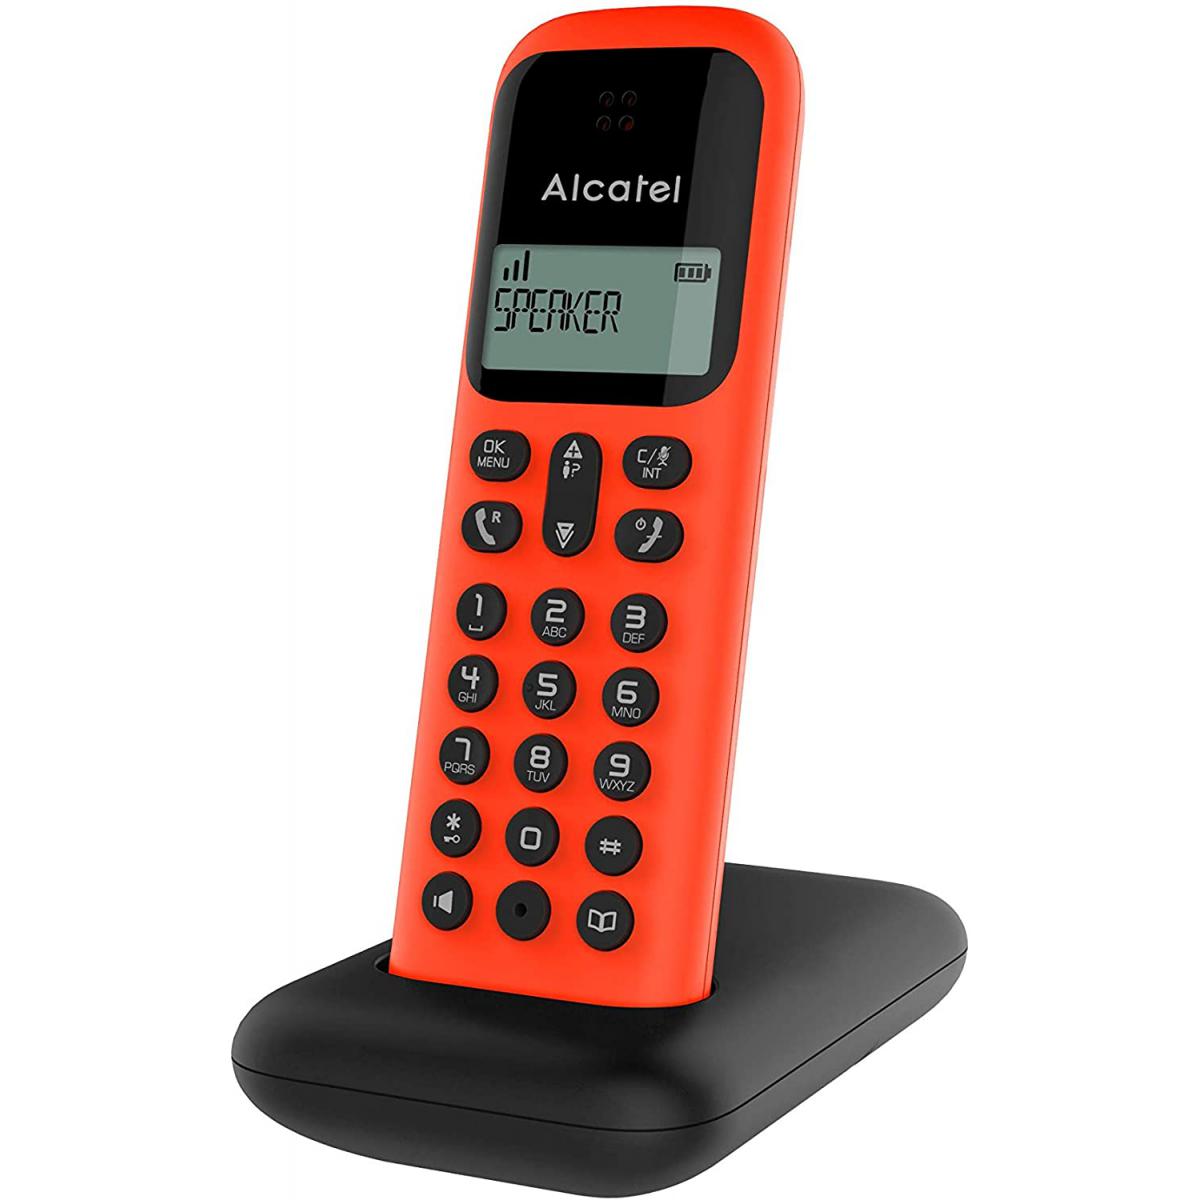 Alcatel - telephone sans Fil DECT avec fonction Mains Libres rouge noir - Téléphone fixe-répondeur